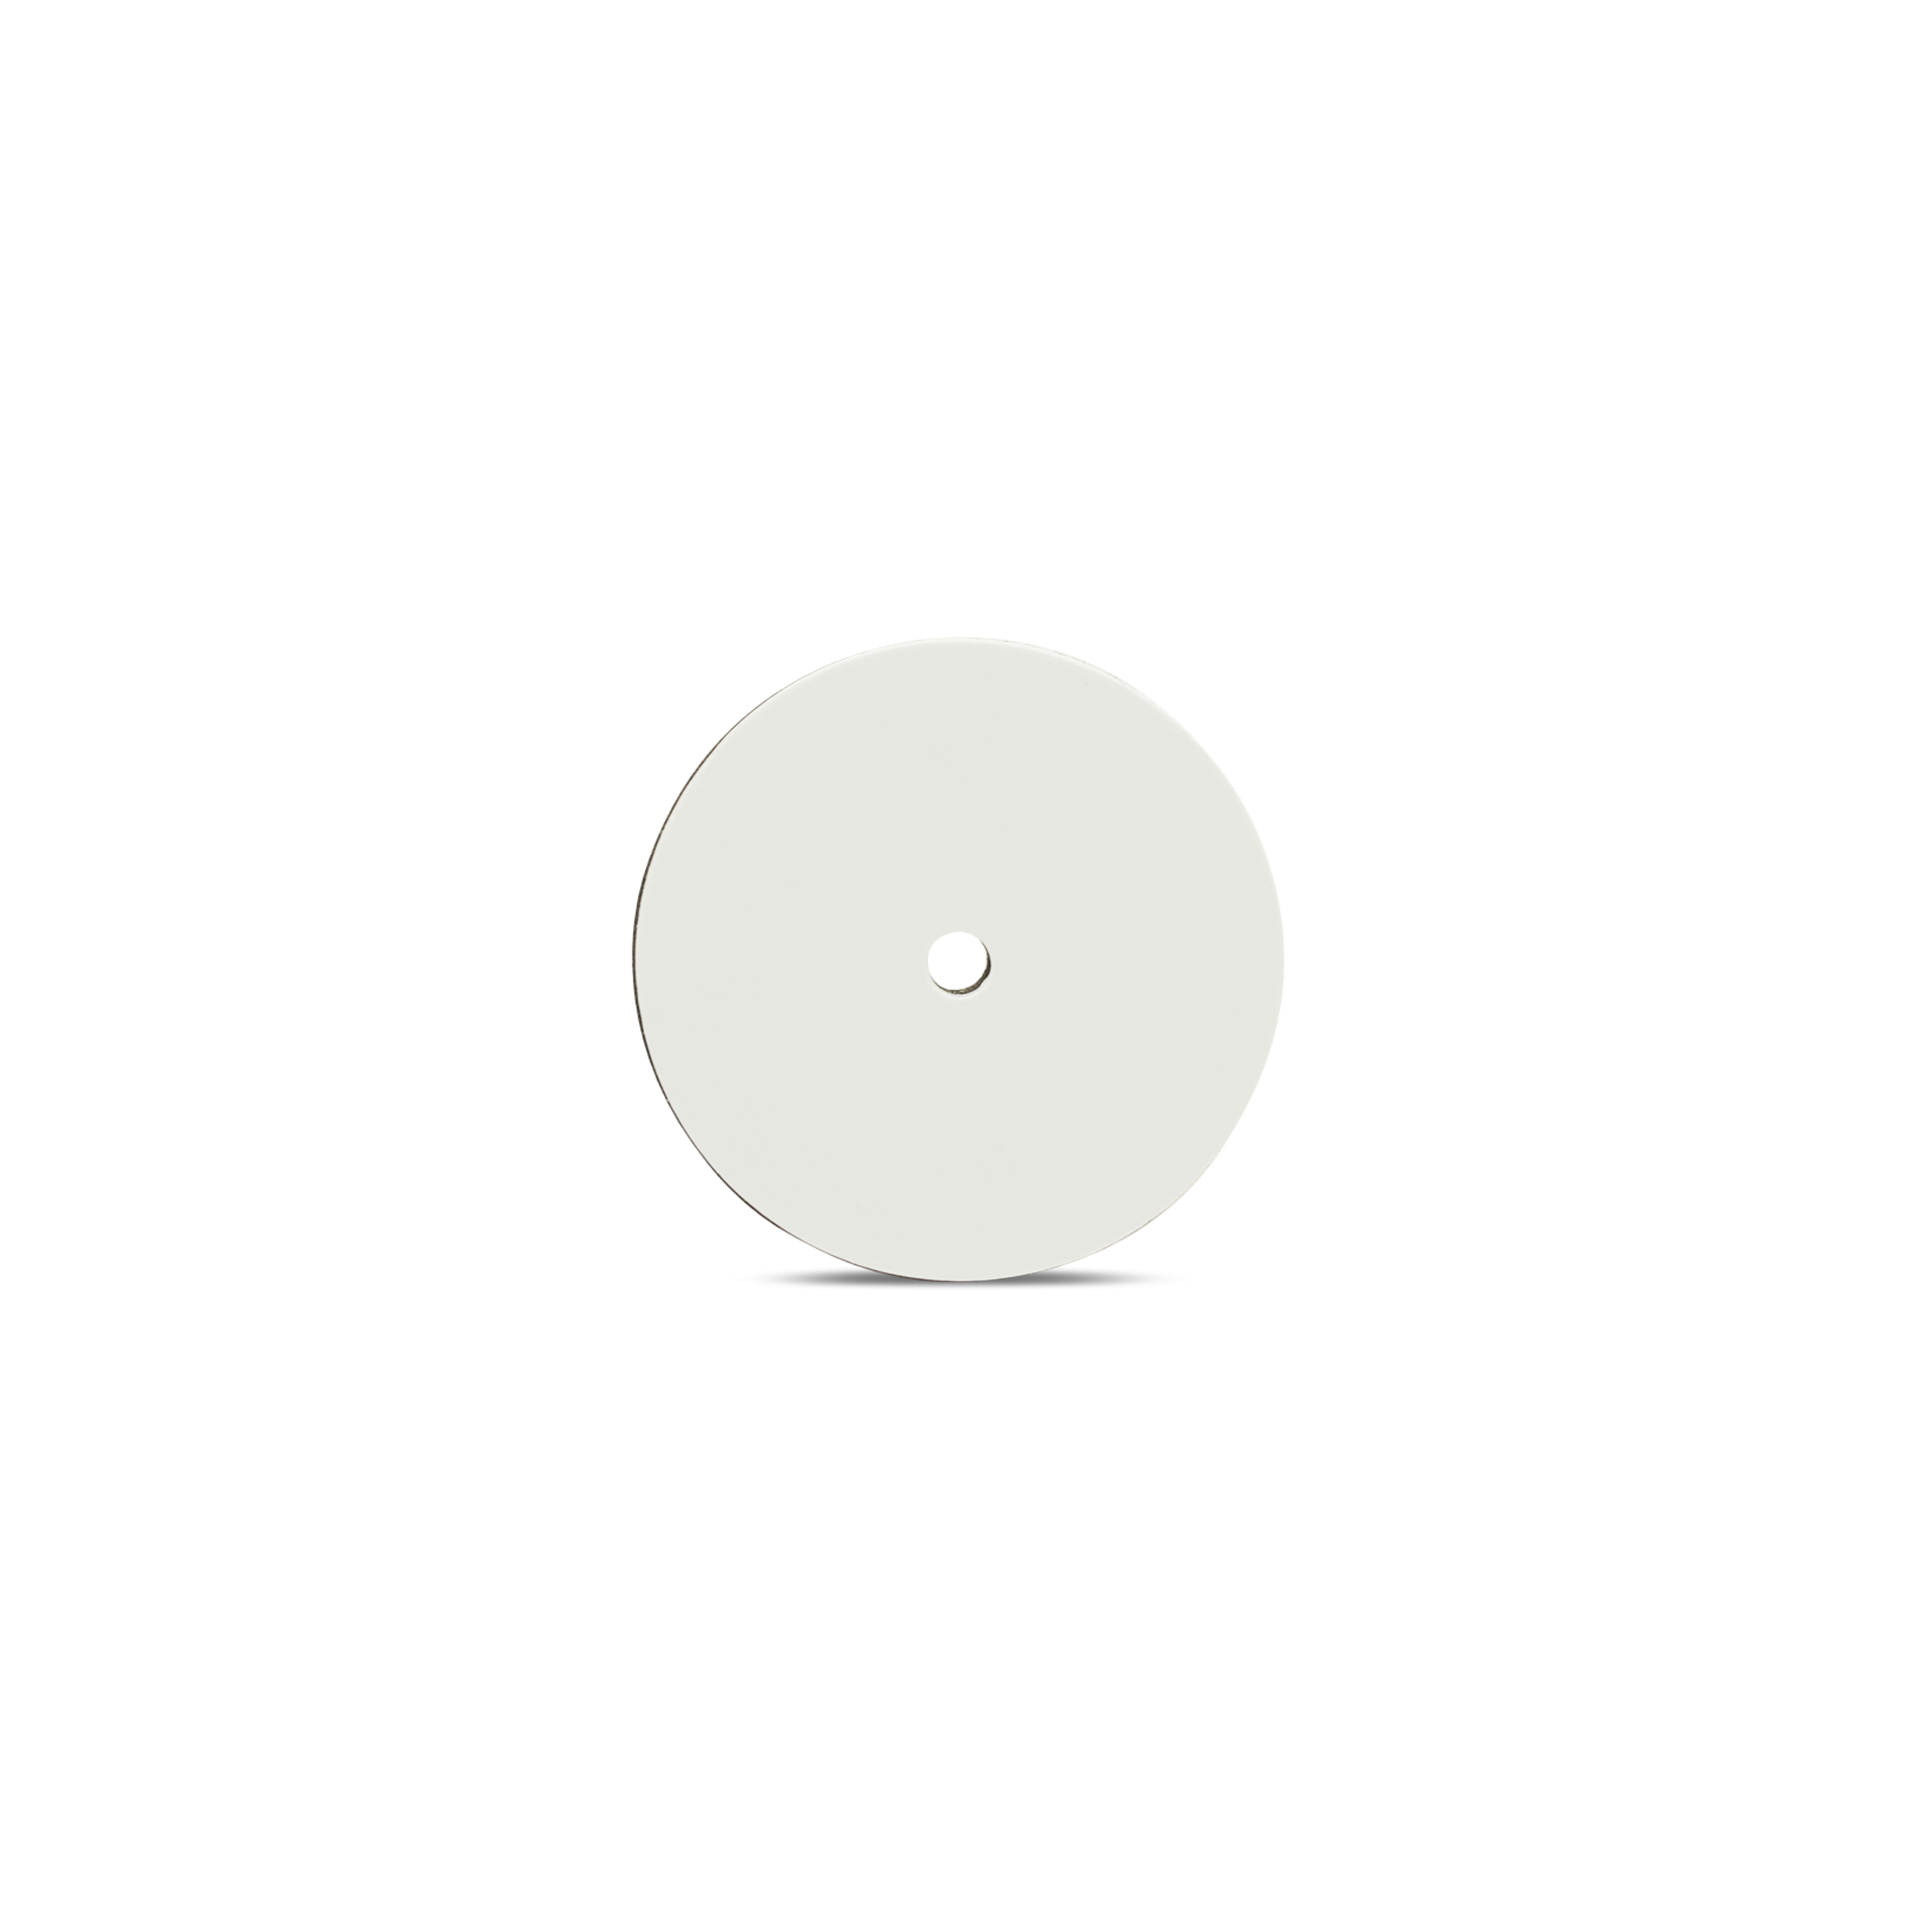 NFC Sticker PVC - On-Metal - 30 mm - NTAG213 - 180 Byte - weiß - mit Lochung 